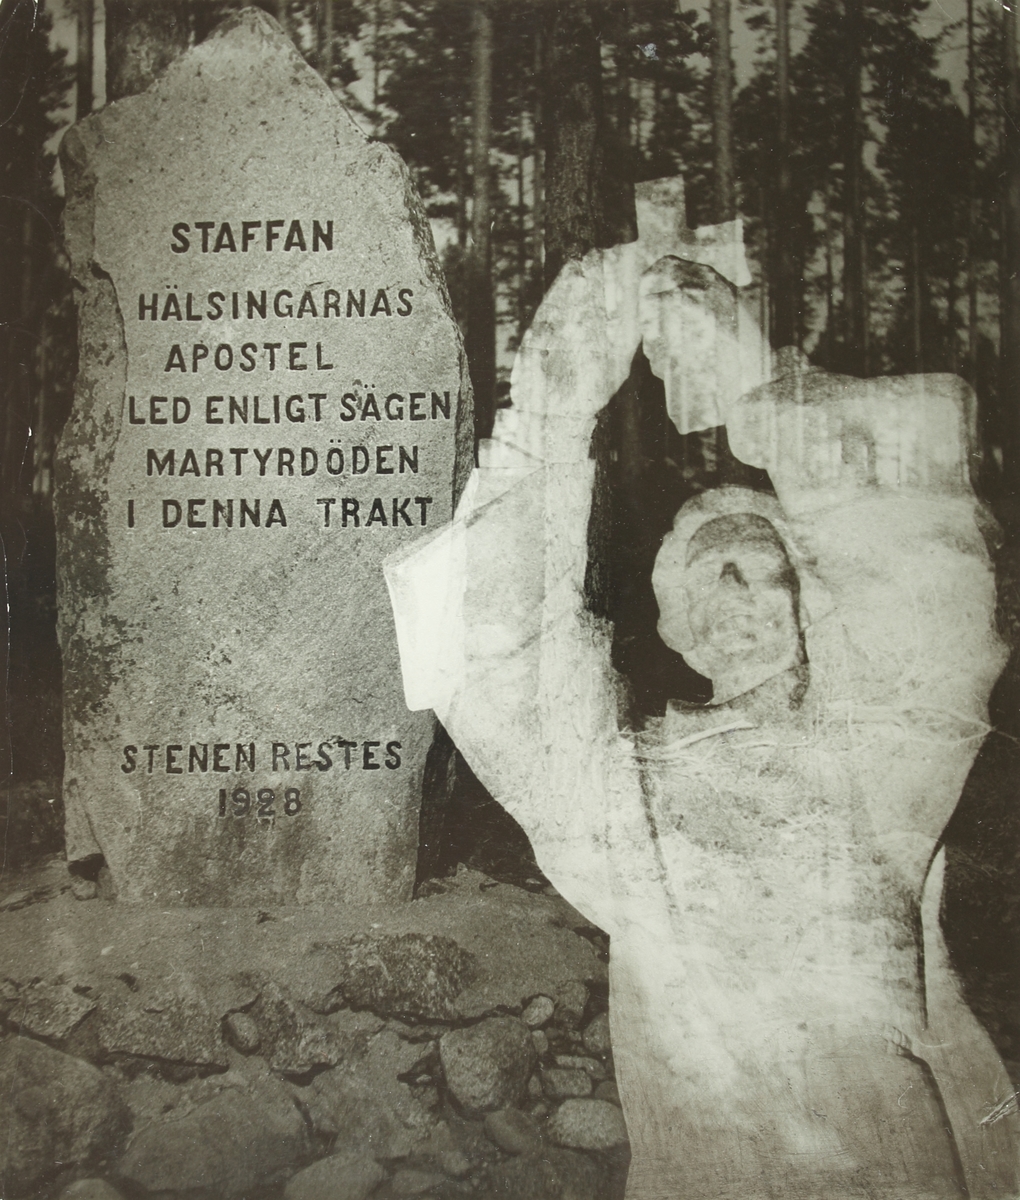 Minnesstenen över Staffan i Själstuga står till väster i bild. Bredvid denna finns en staty av densamme inlagd i bilden som tonats ned till en translucent figur.